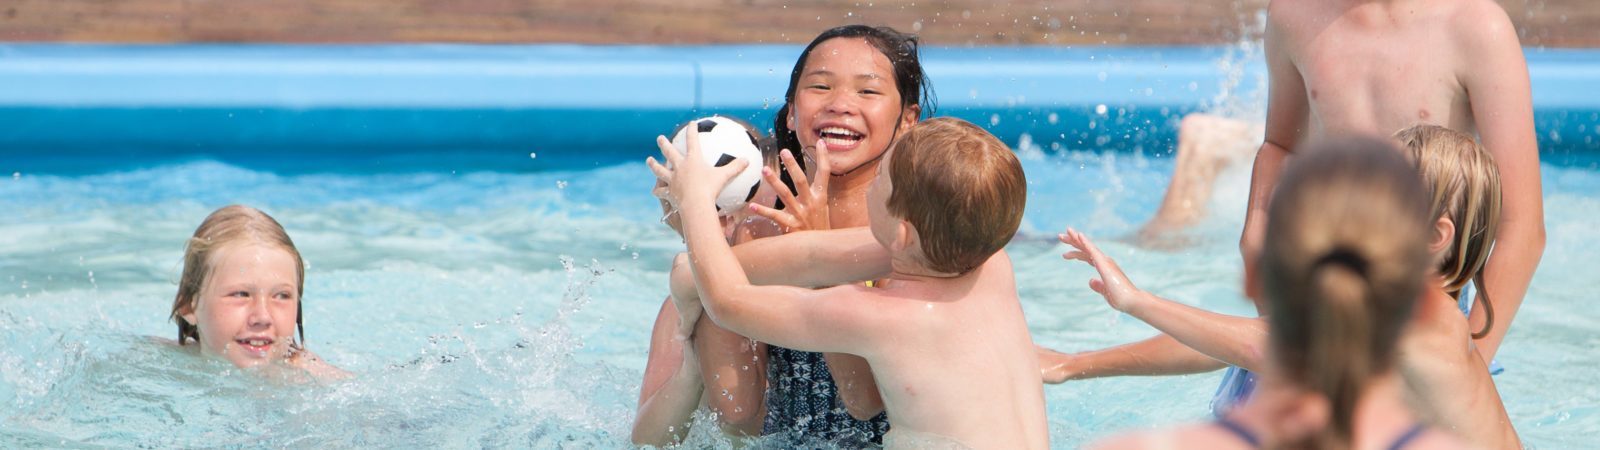 Kindercamping Drenthe met Zwembad